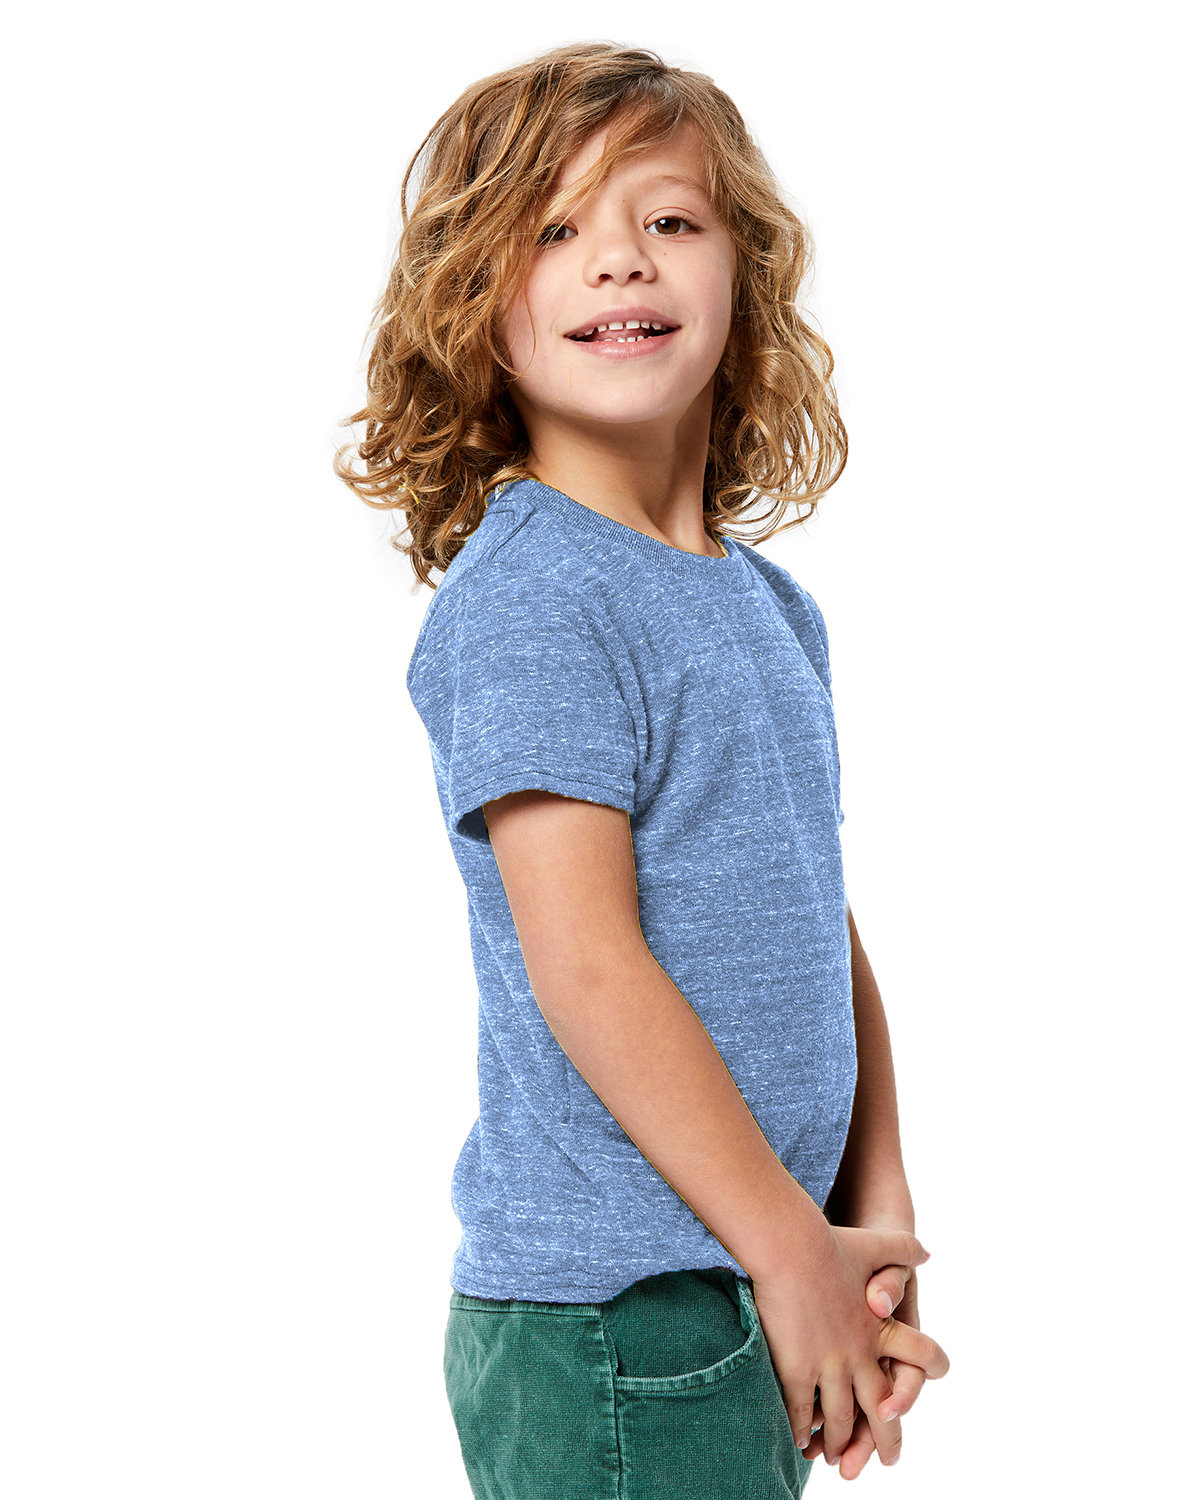 US Blanks Toddler Tri-Blend Crewneck T-Shirt | alphabroder